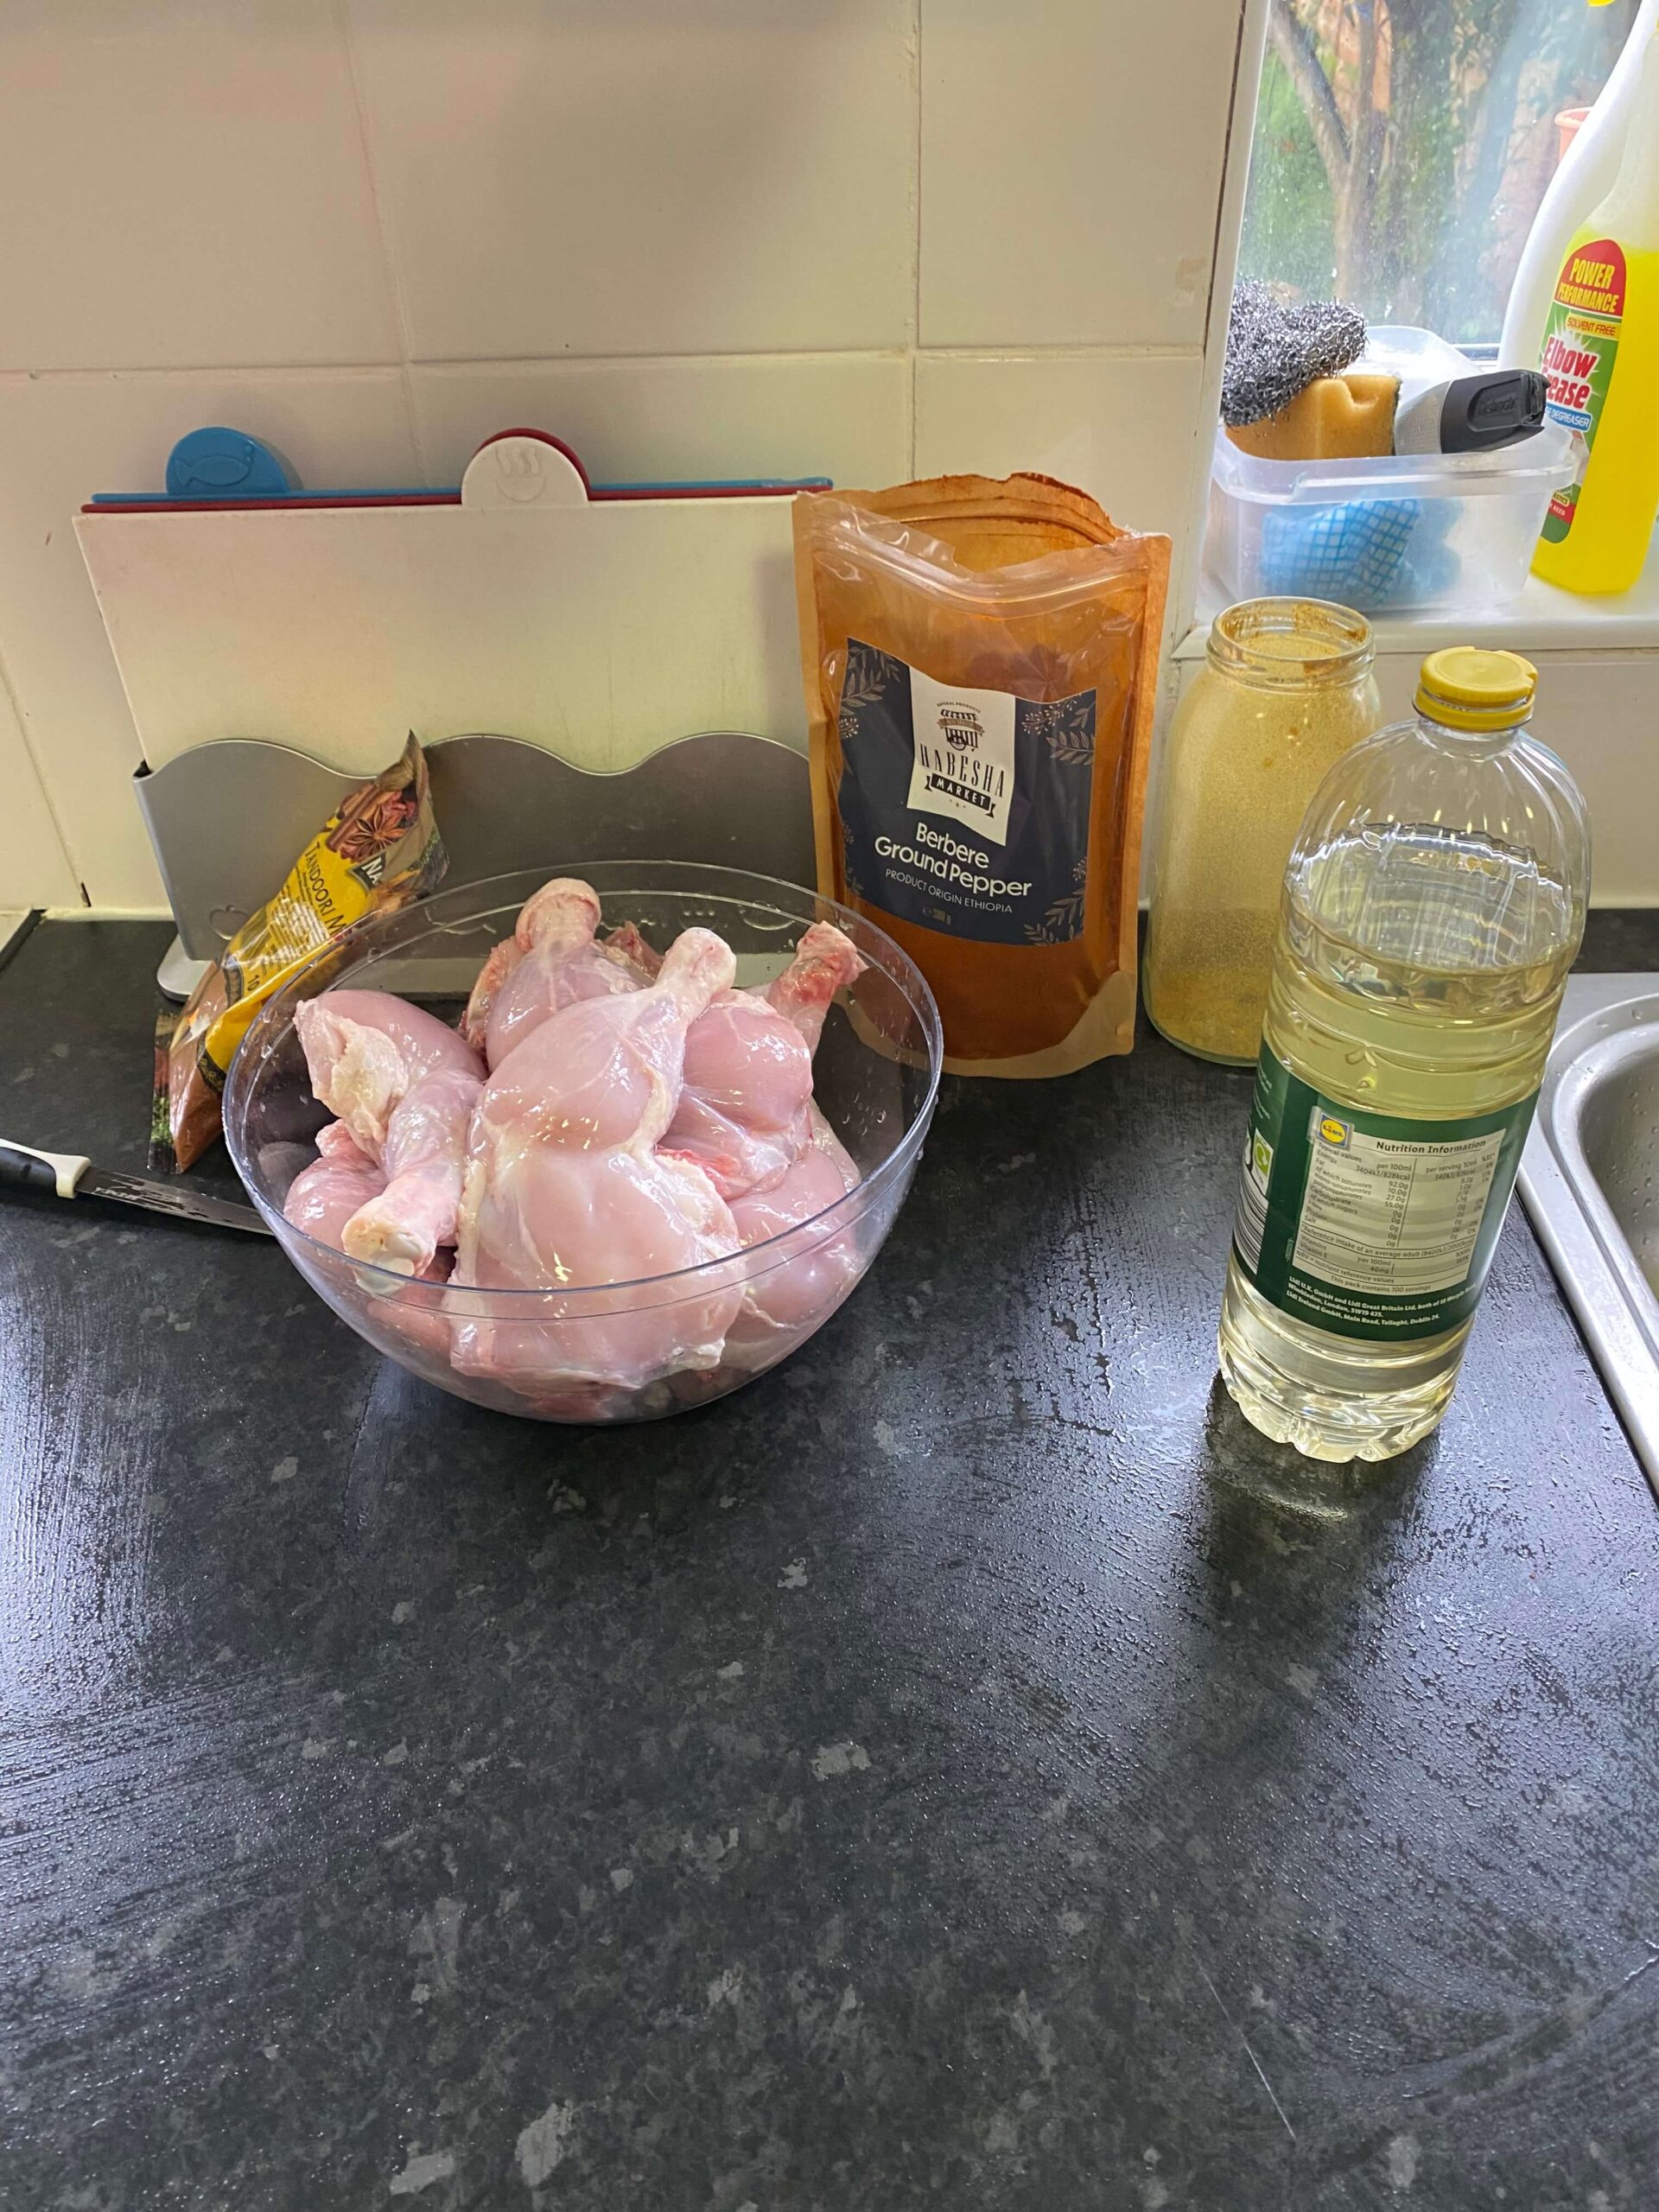 Preparing chicken